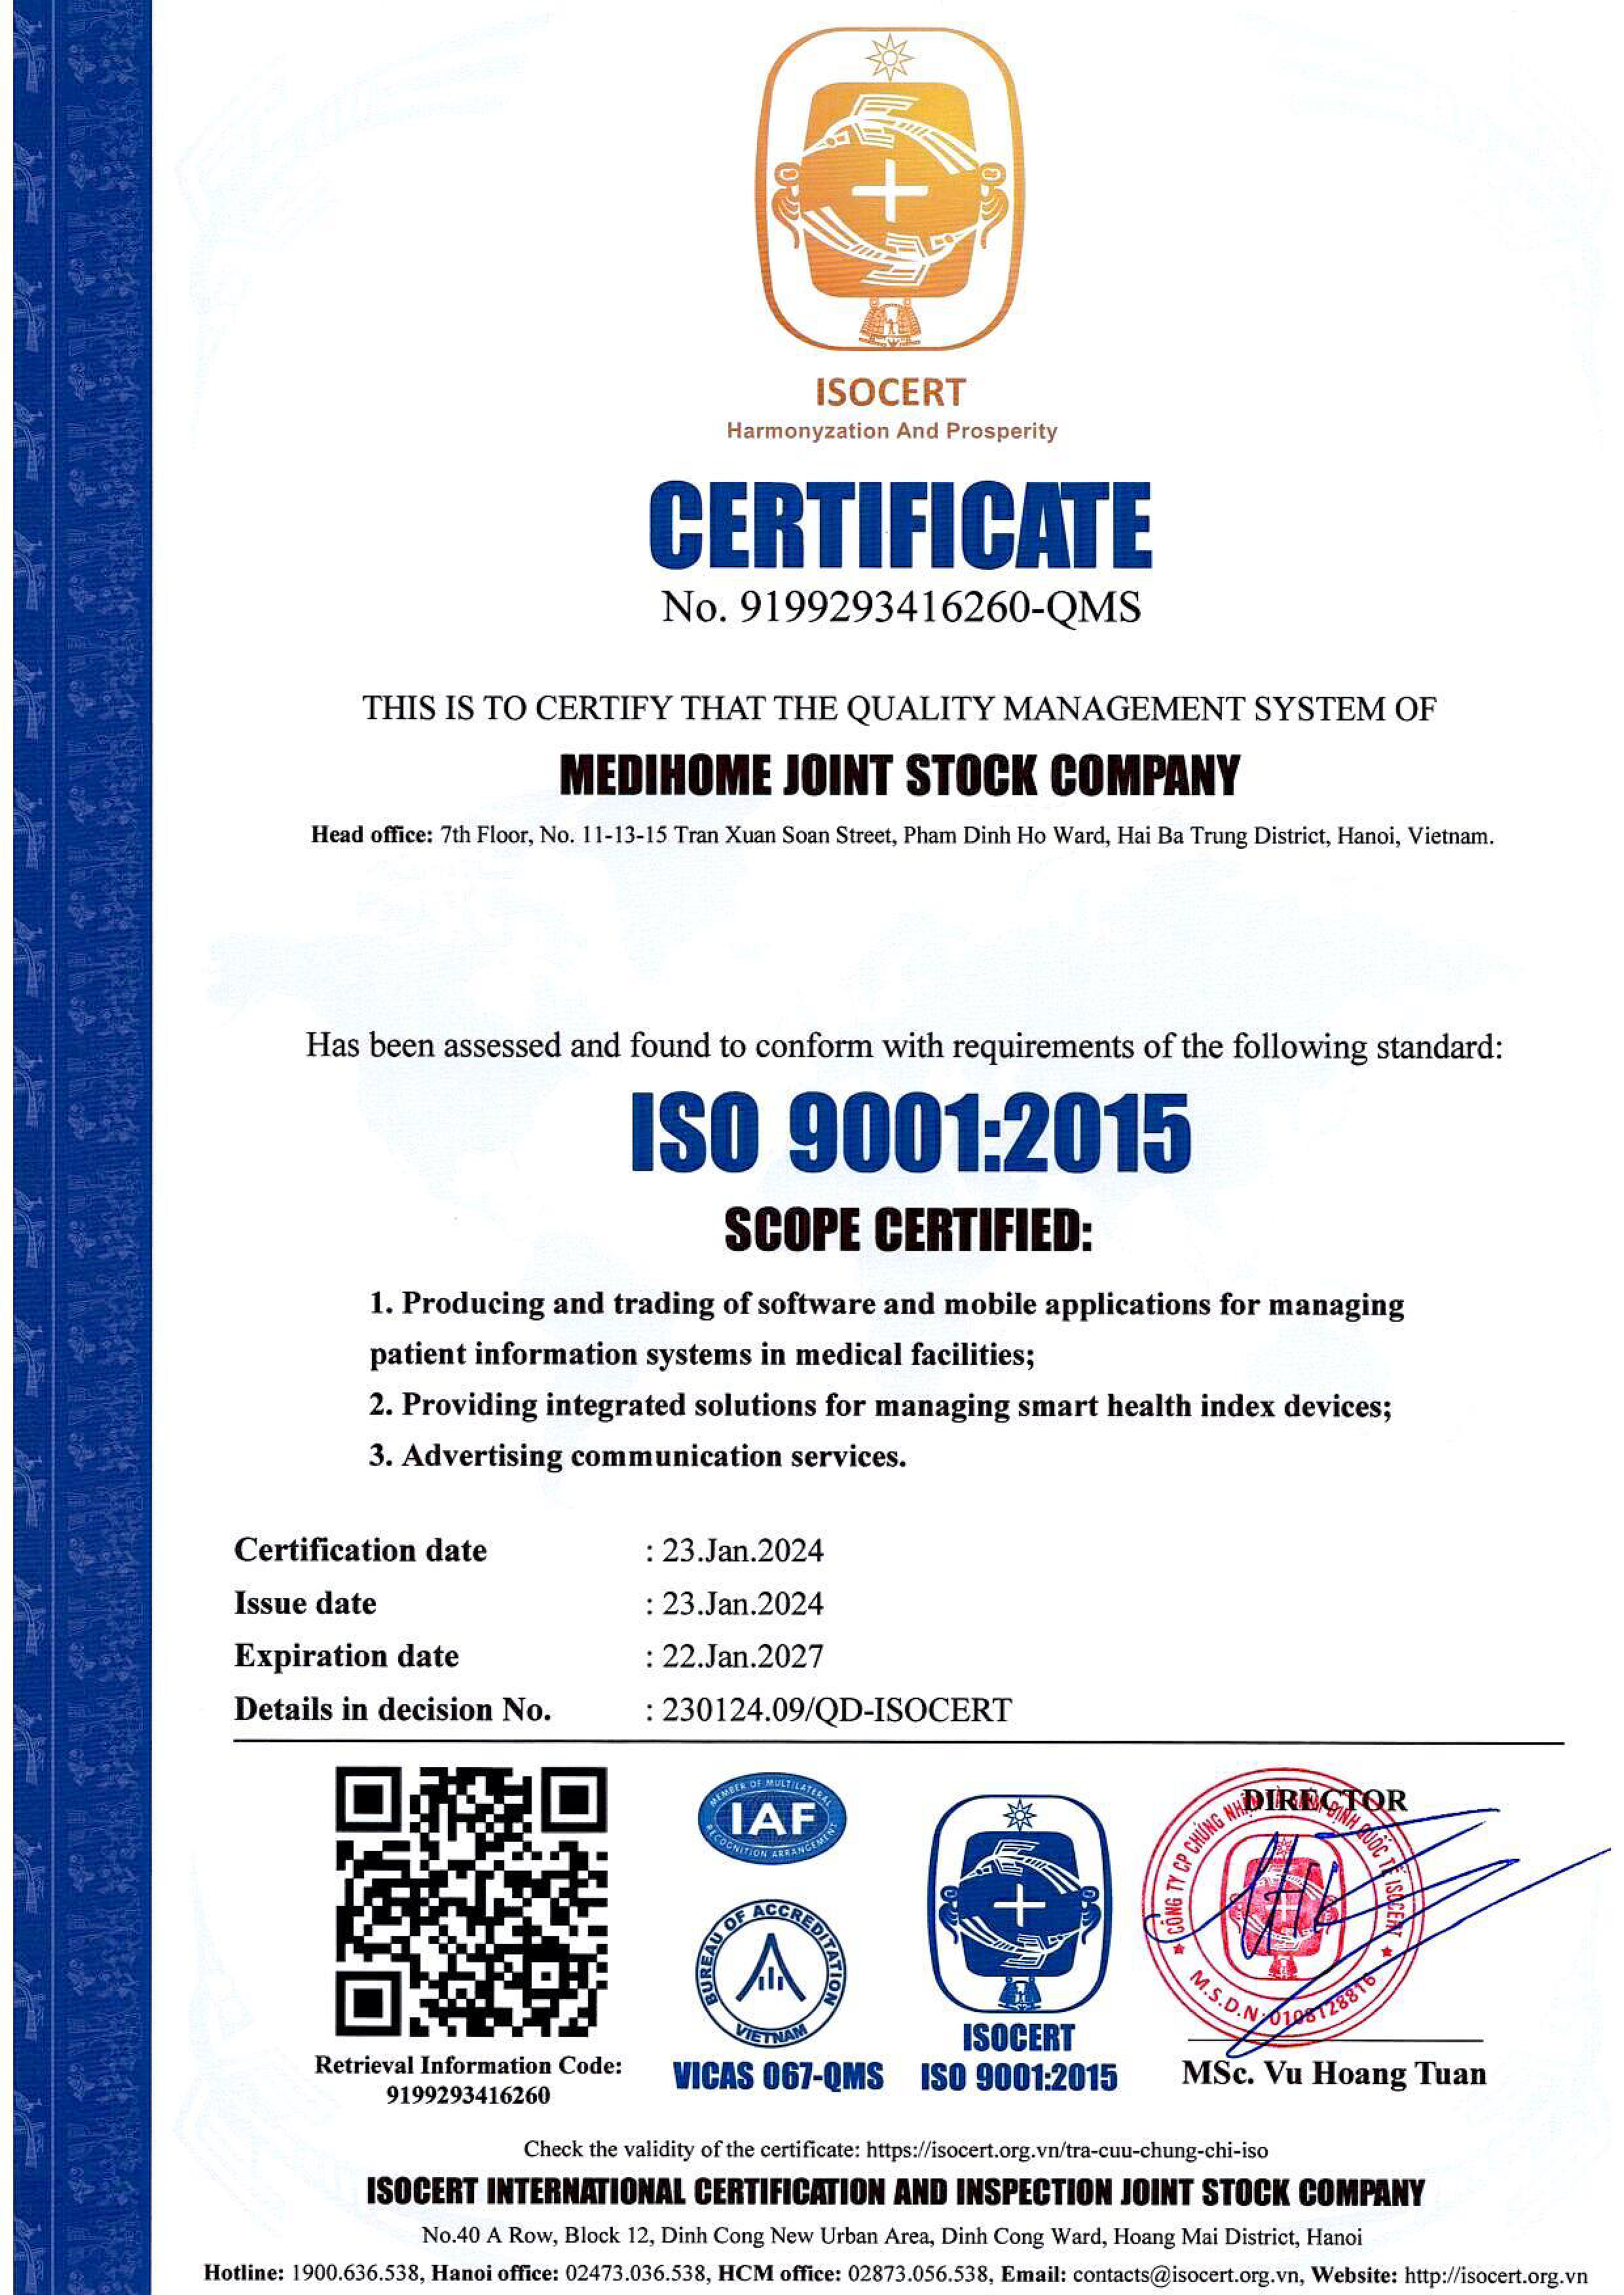 ISO CERT 9001:2015